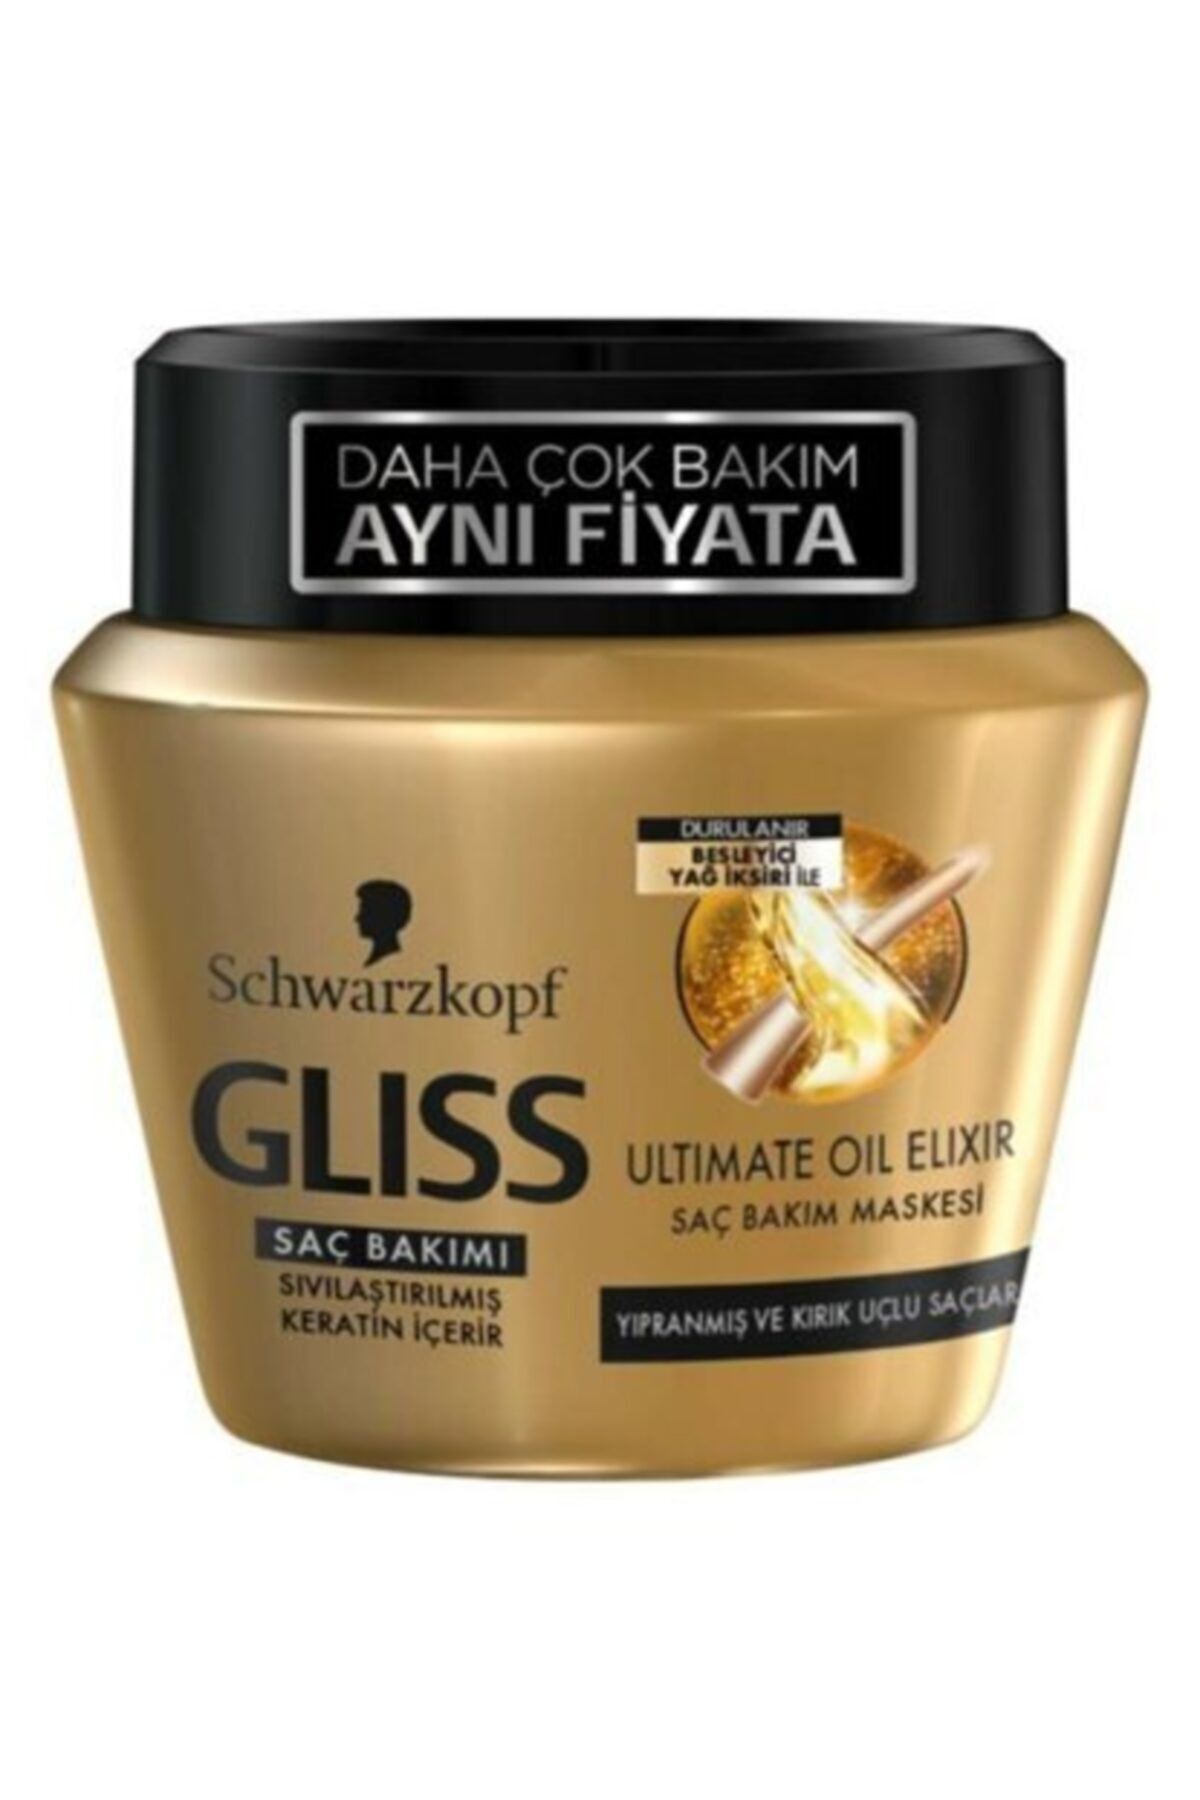 Gliss Ultimate Oil Elixir Bakim Maskesi 300 Ml Fiyati Yorumlari Trendyol